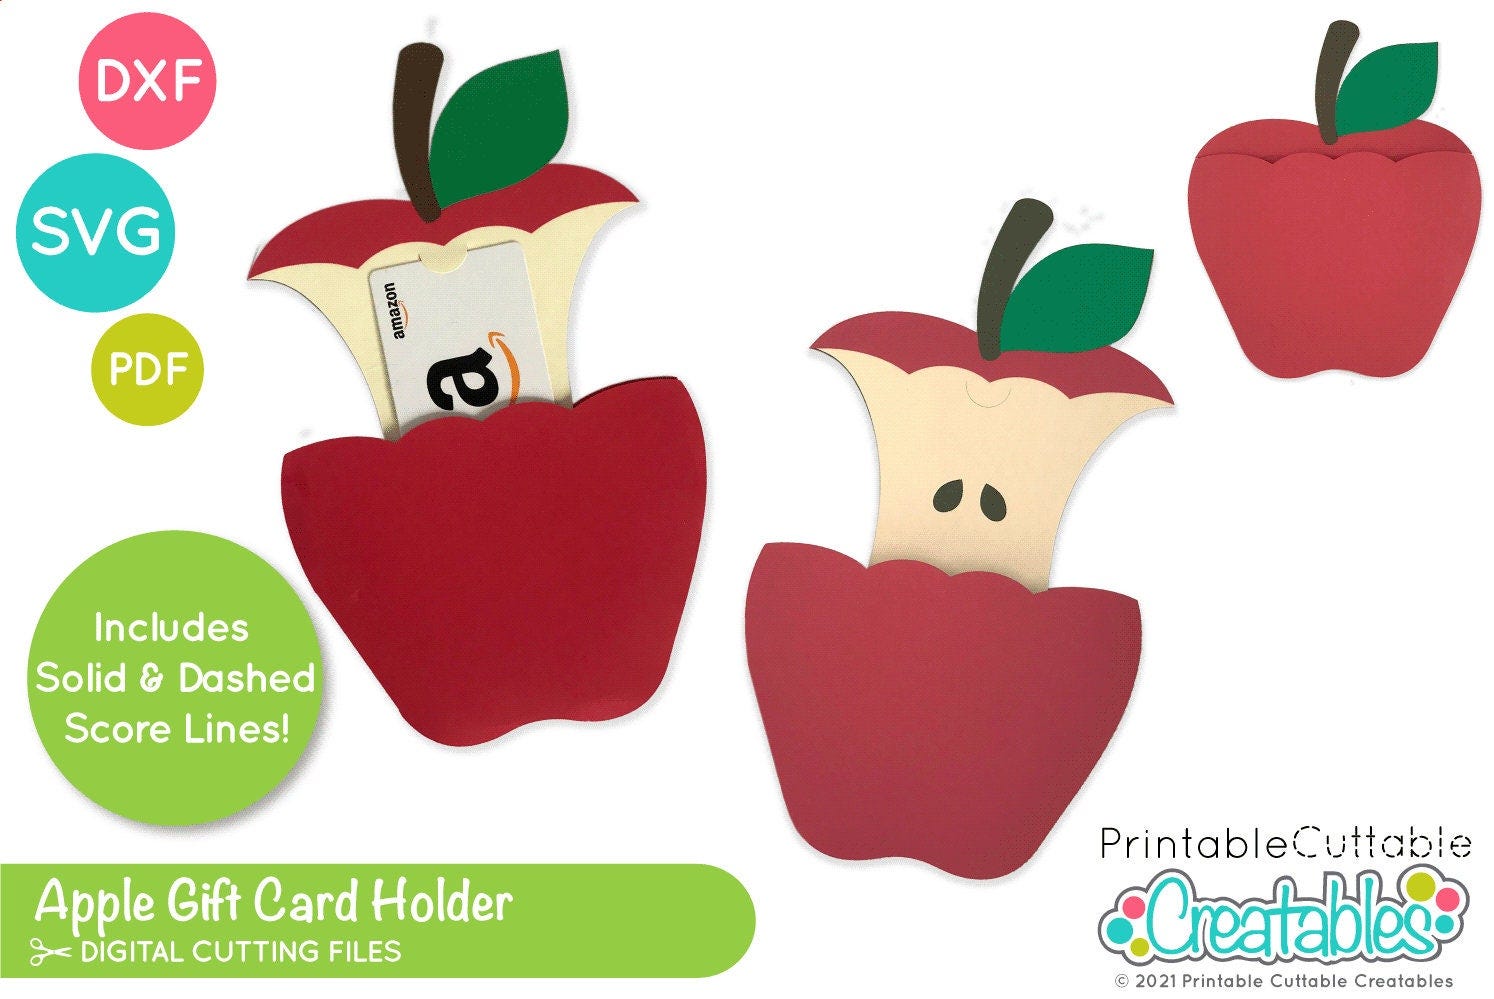 Apple Gift Card Holder SVG File for Cricut Silhouette D066 - School Gift Card Holder Svg Template, Teacher Gift Card Holder SVG Cut File